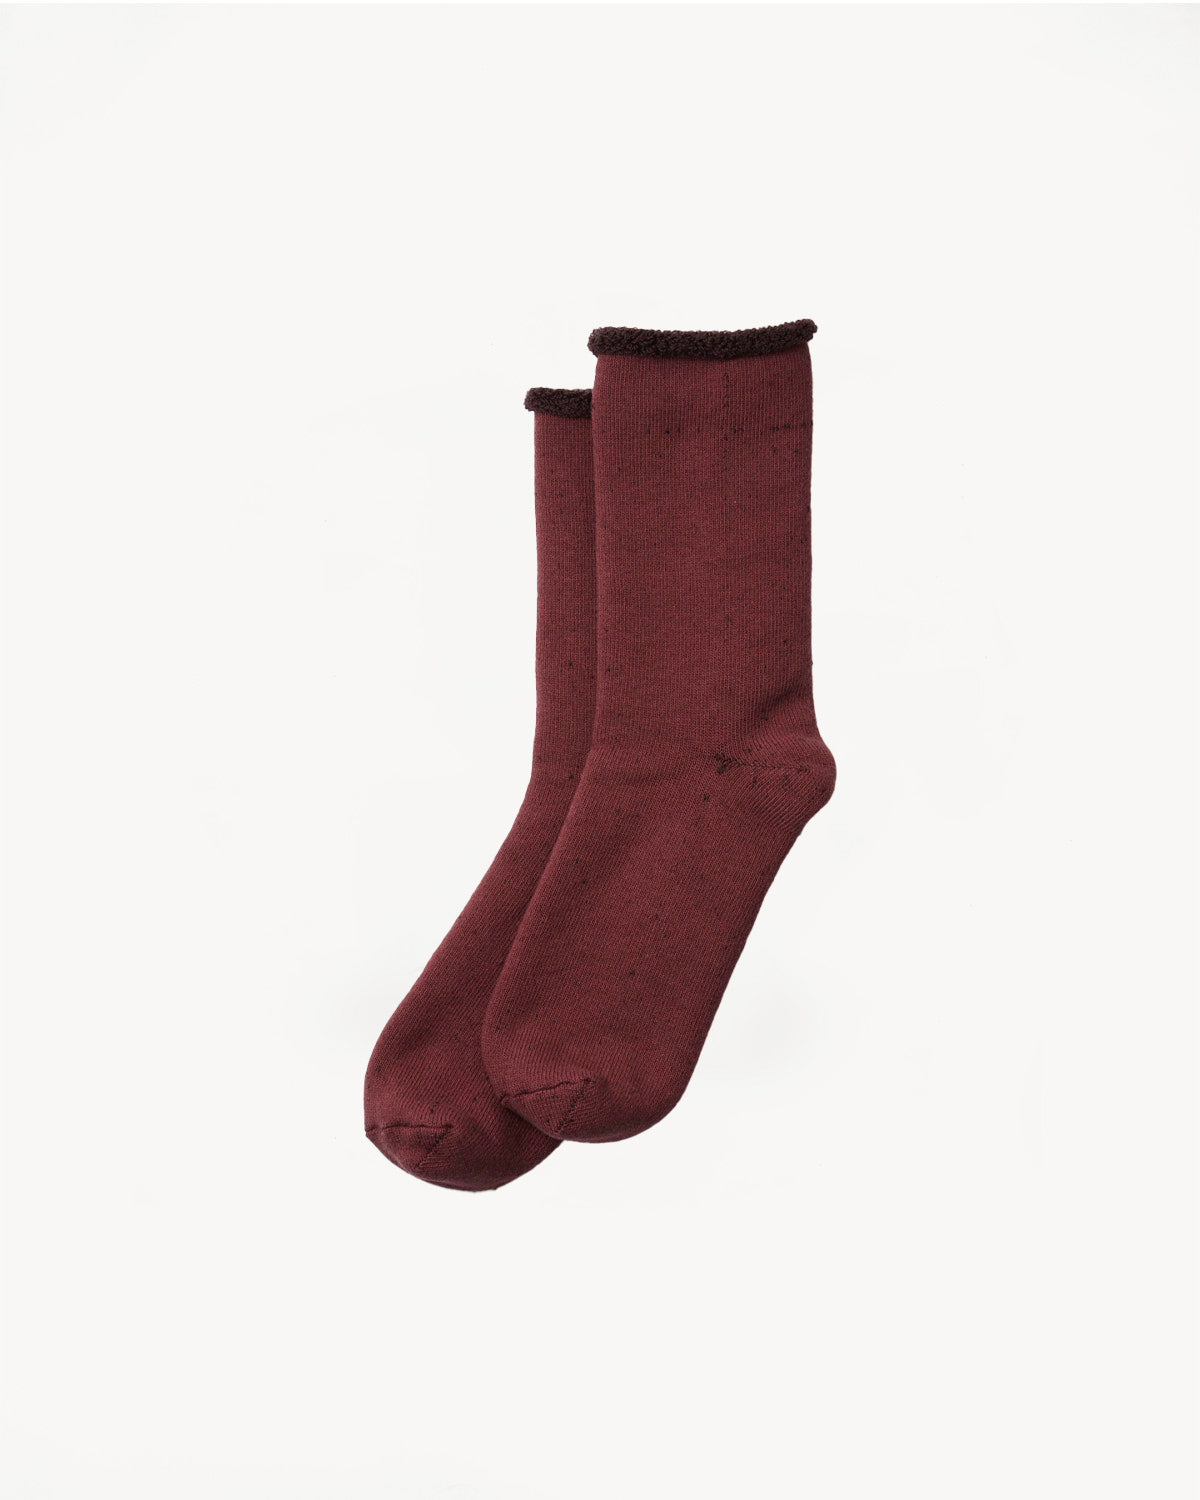 R1434 - Double Face Cozy Sleeping Socks 